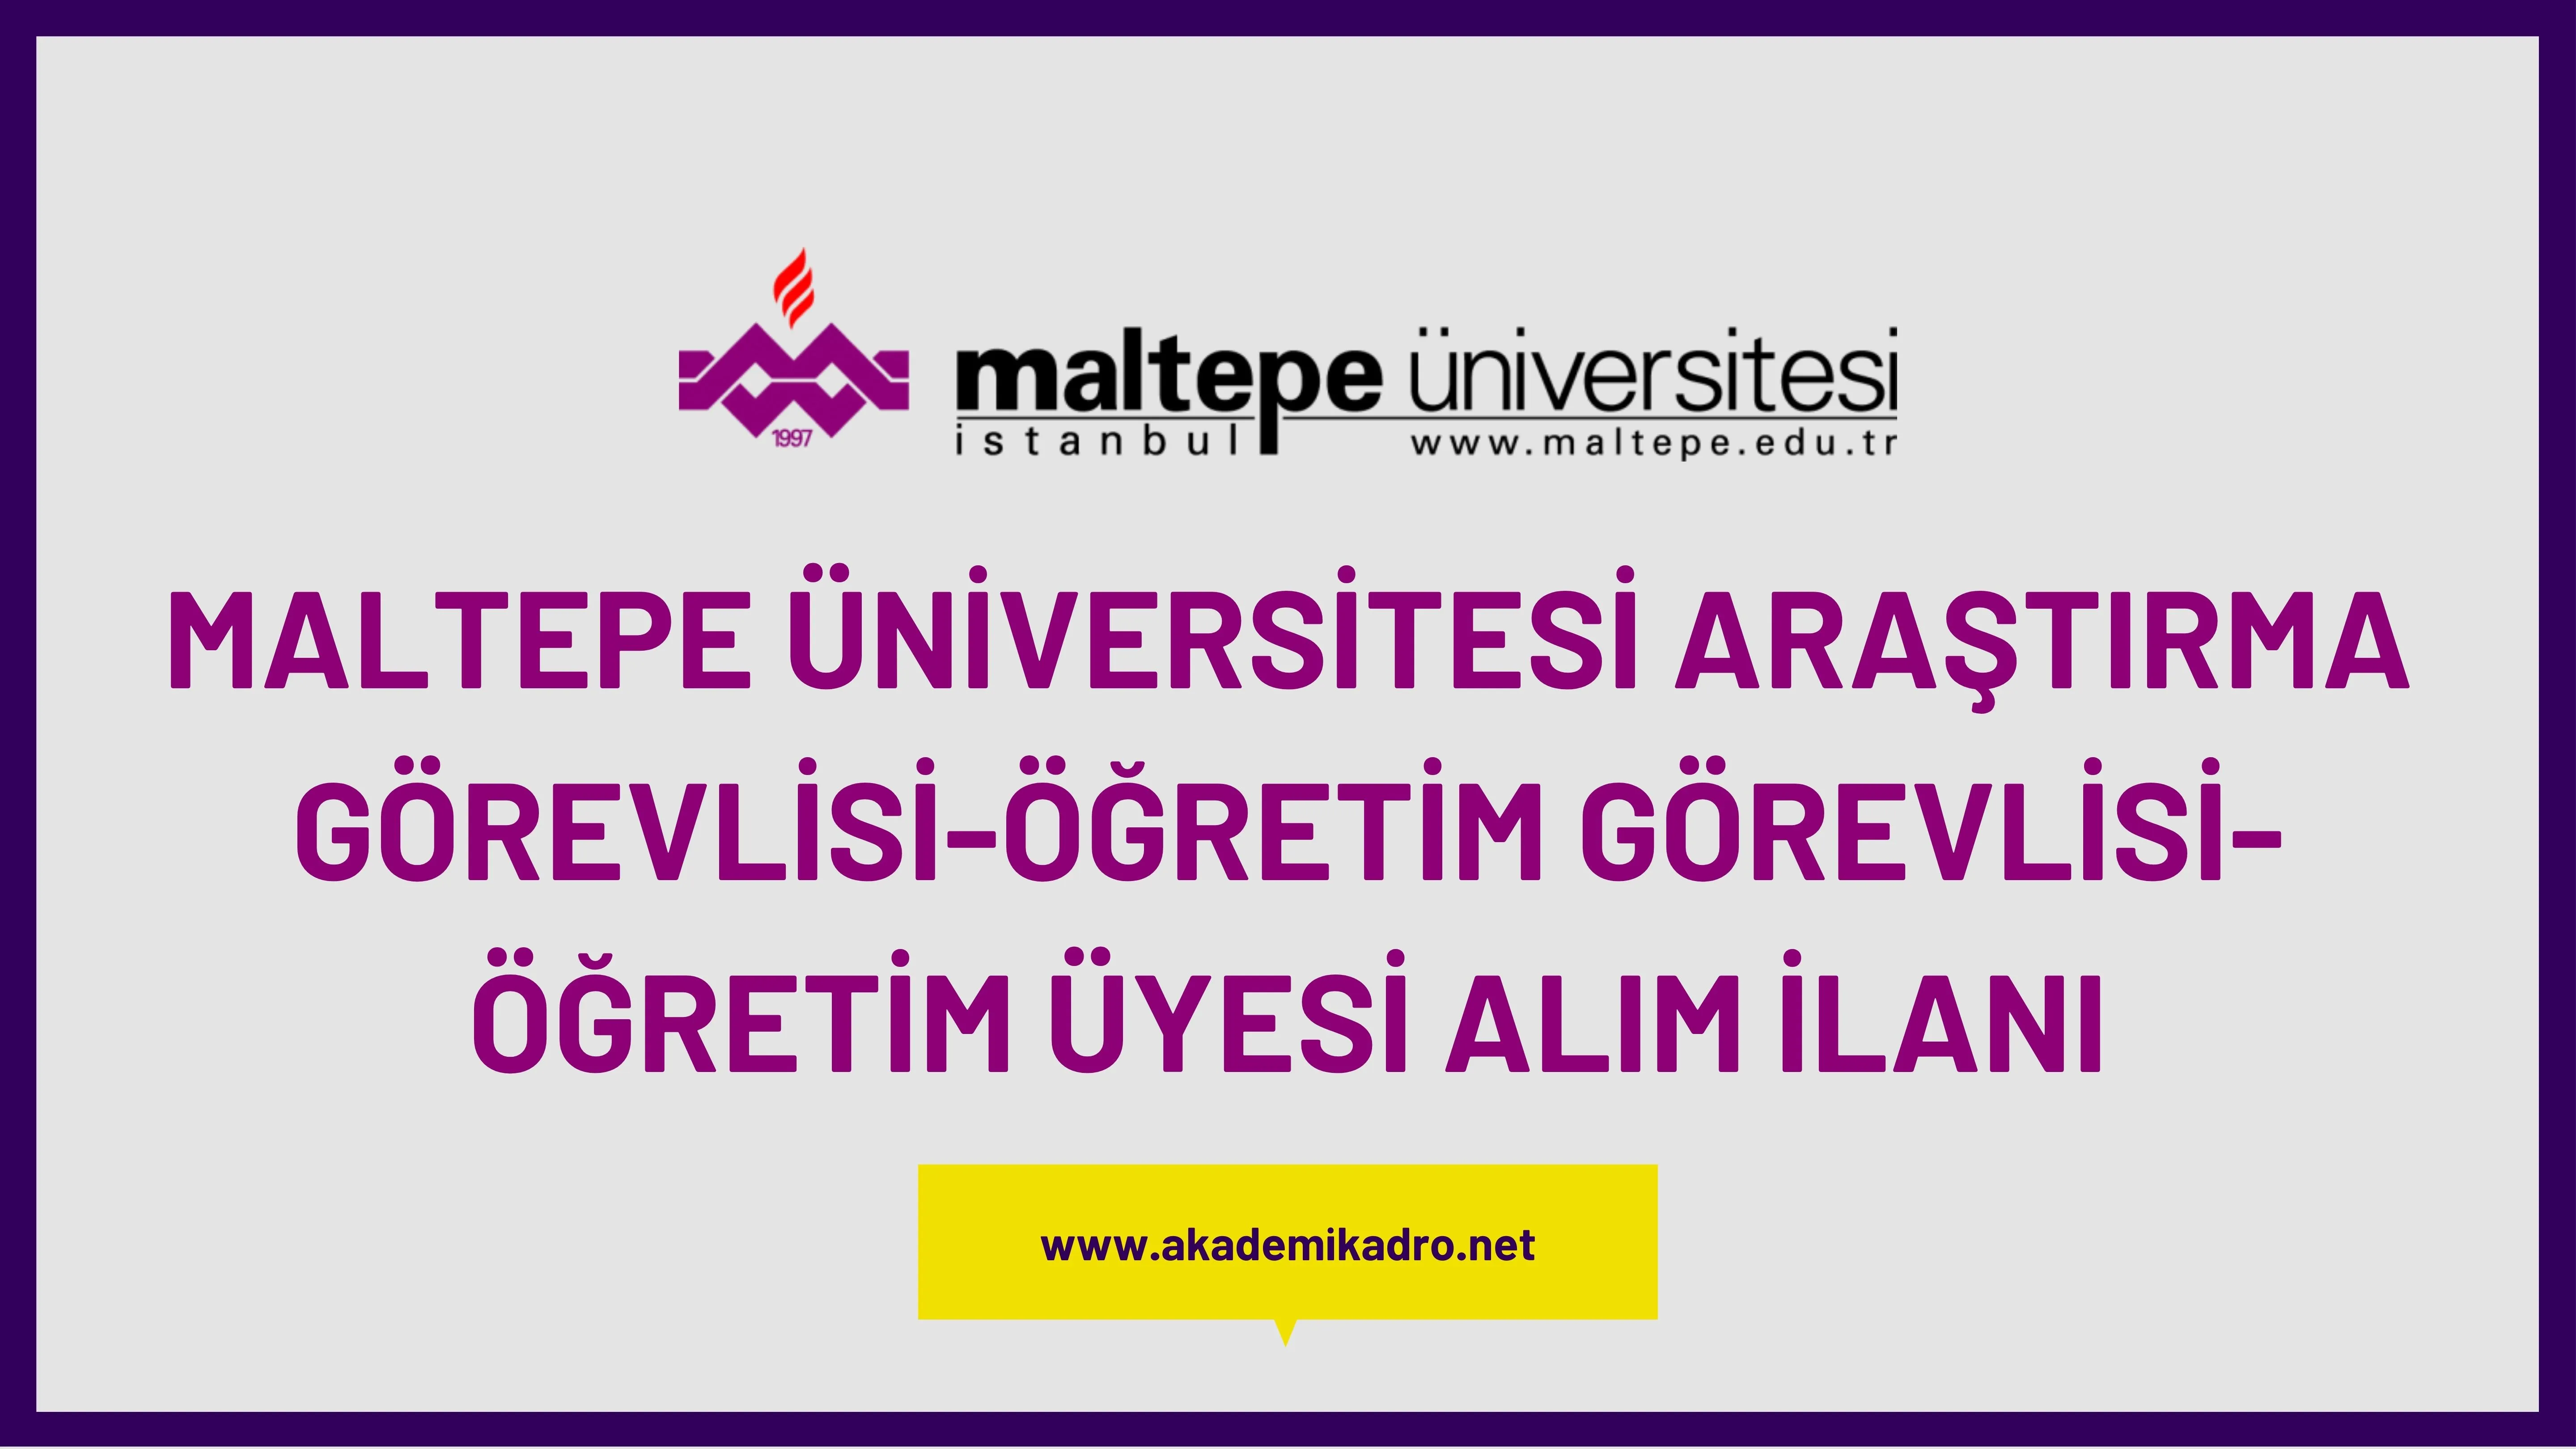 Maltepe Üniversitesi 2 Öğretim görevlisi, 8 Araştırma görevlisi ve birçok alandan 31 Öğretim üyesi alacak.